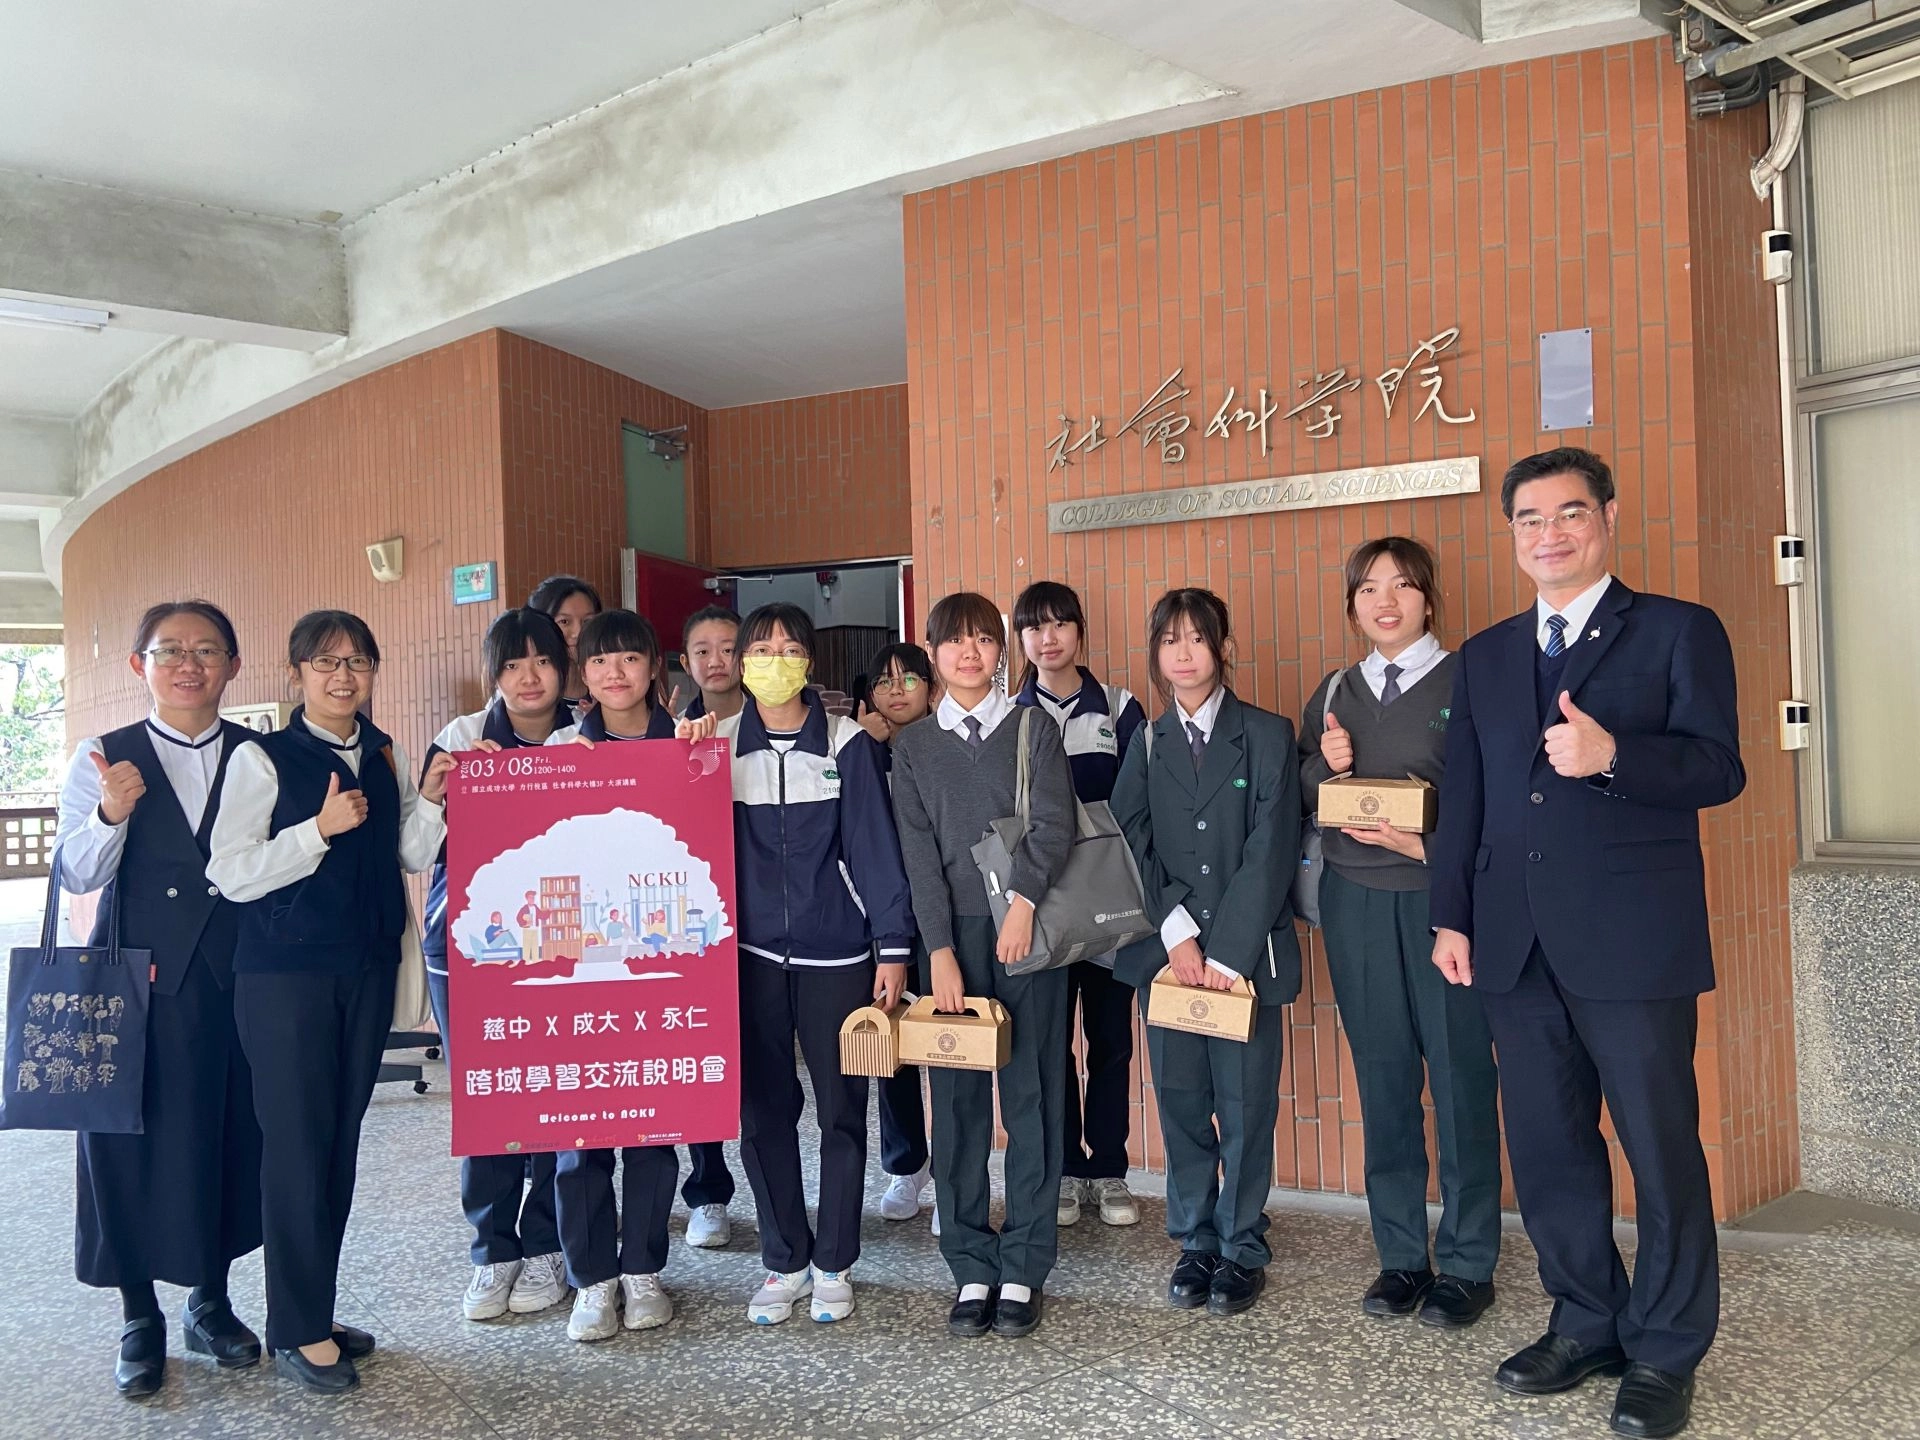 臺南慈中高一學生代表於3月8日前往成功大學社會科學院透過跨域合作，鏈結高教資源進行。